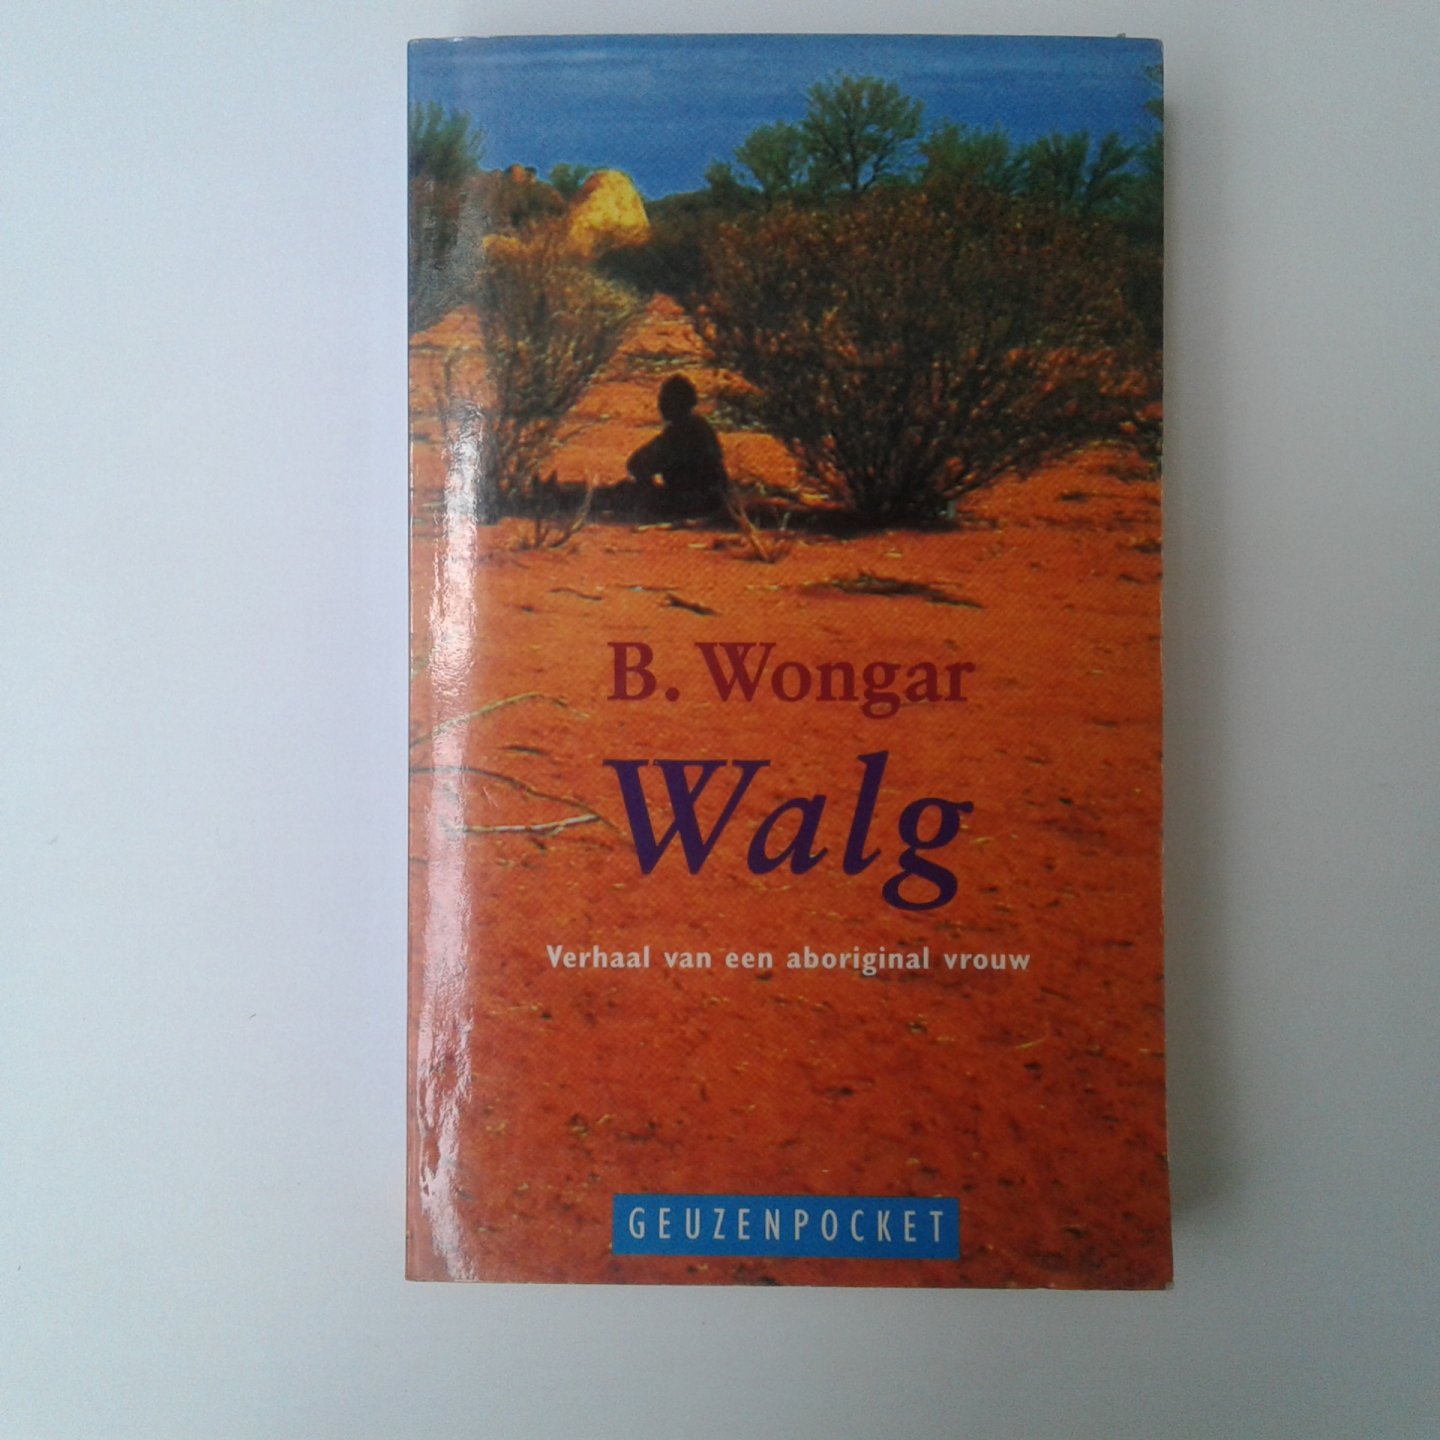 Wongar, B. - Walg, Verhaal van een aboriginal vrouw